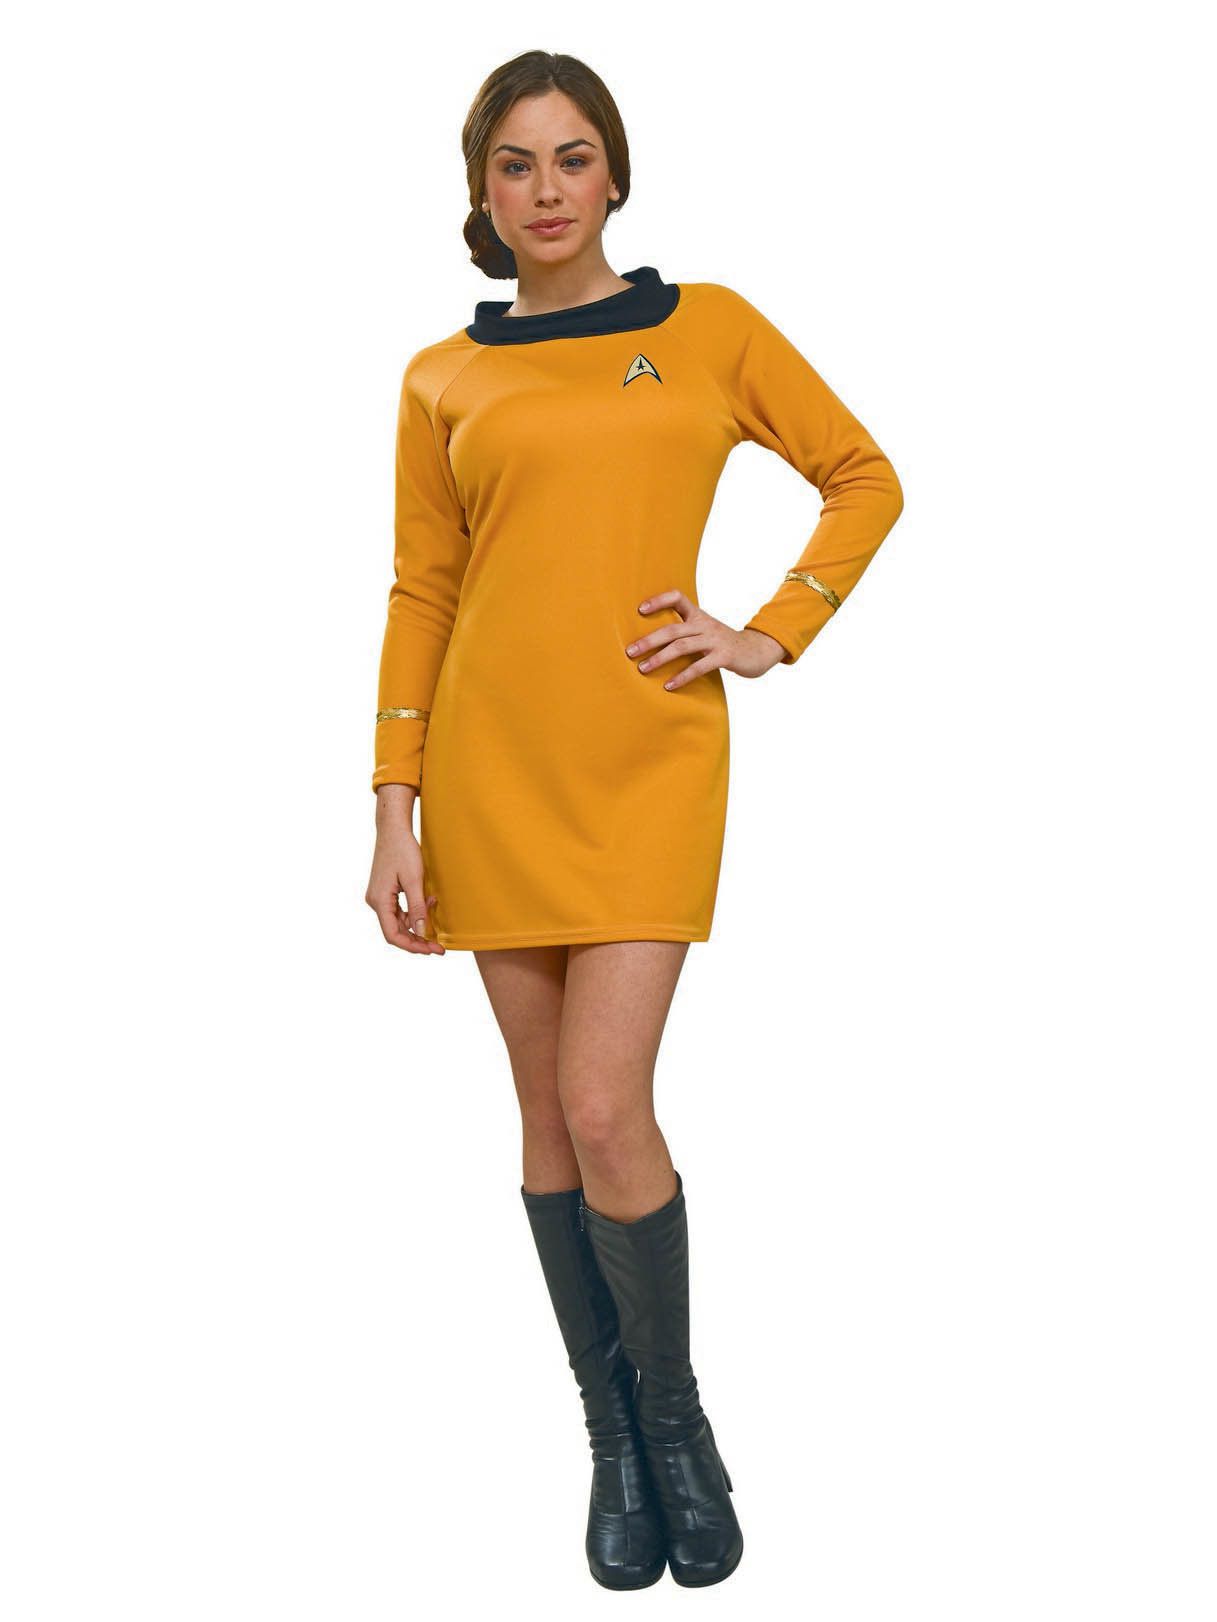 Adult Star Trek Captain Kirk Deluxe Costume - costumes.com